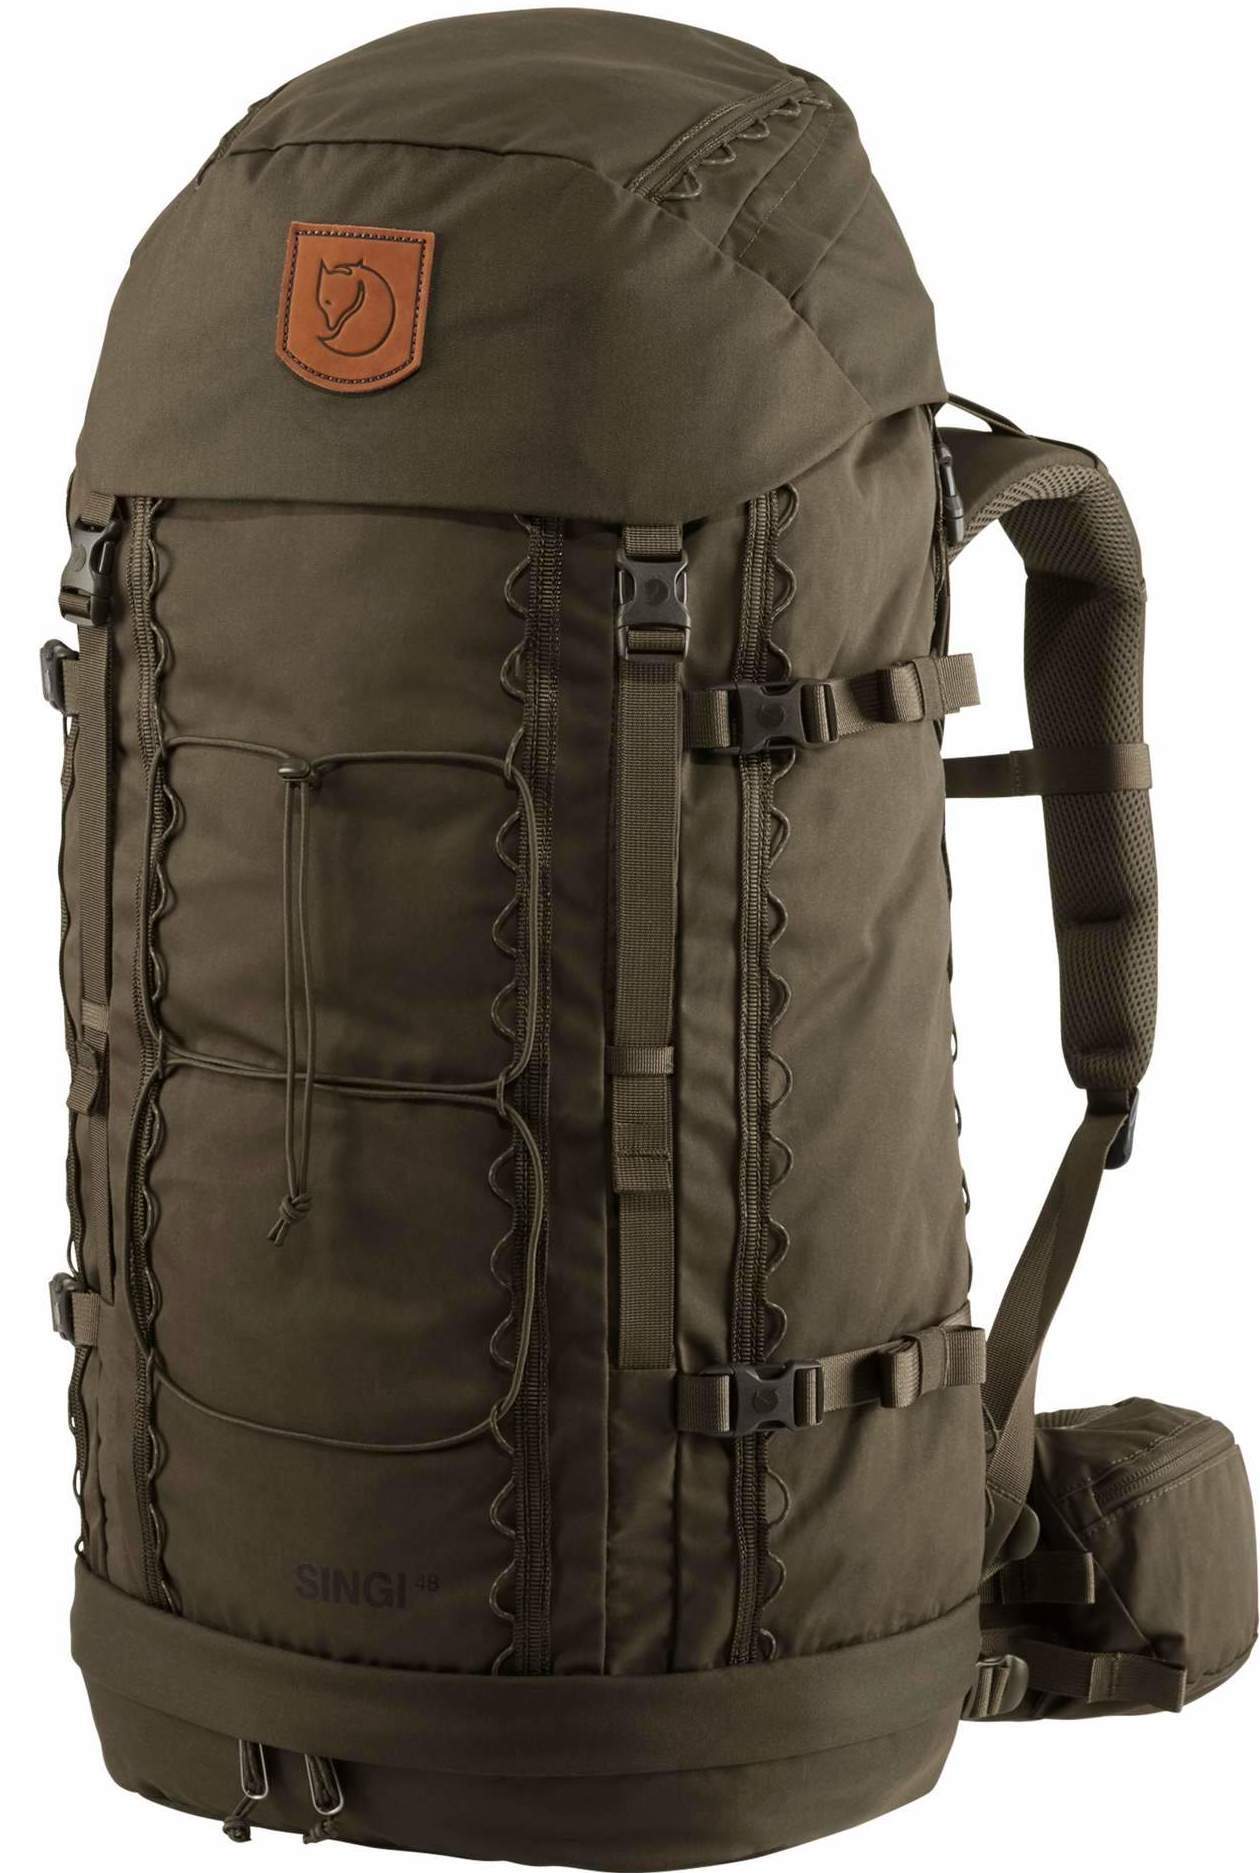 Fjällräven Singi 48 backpack